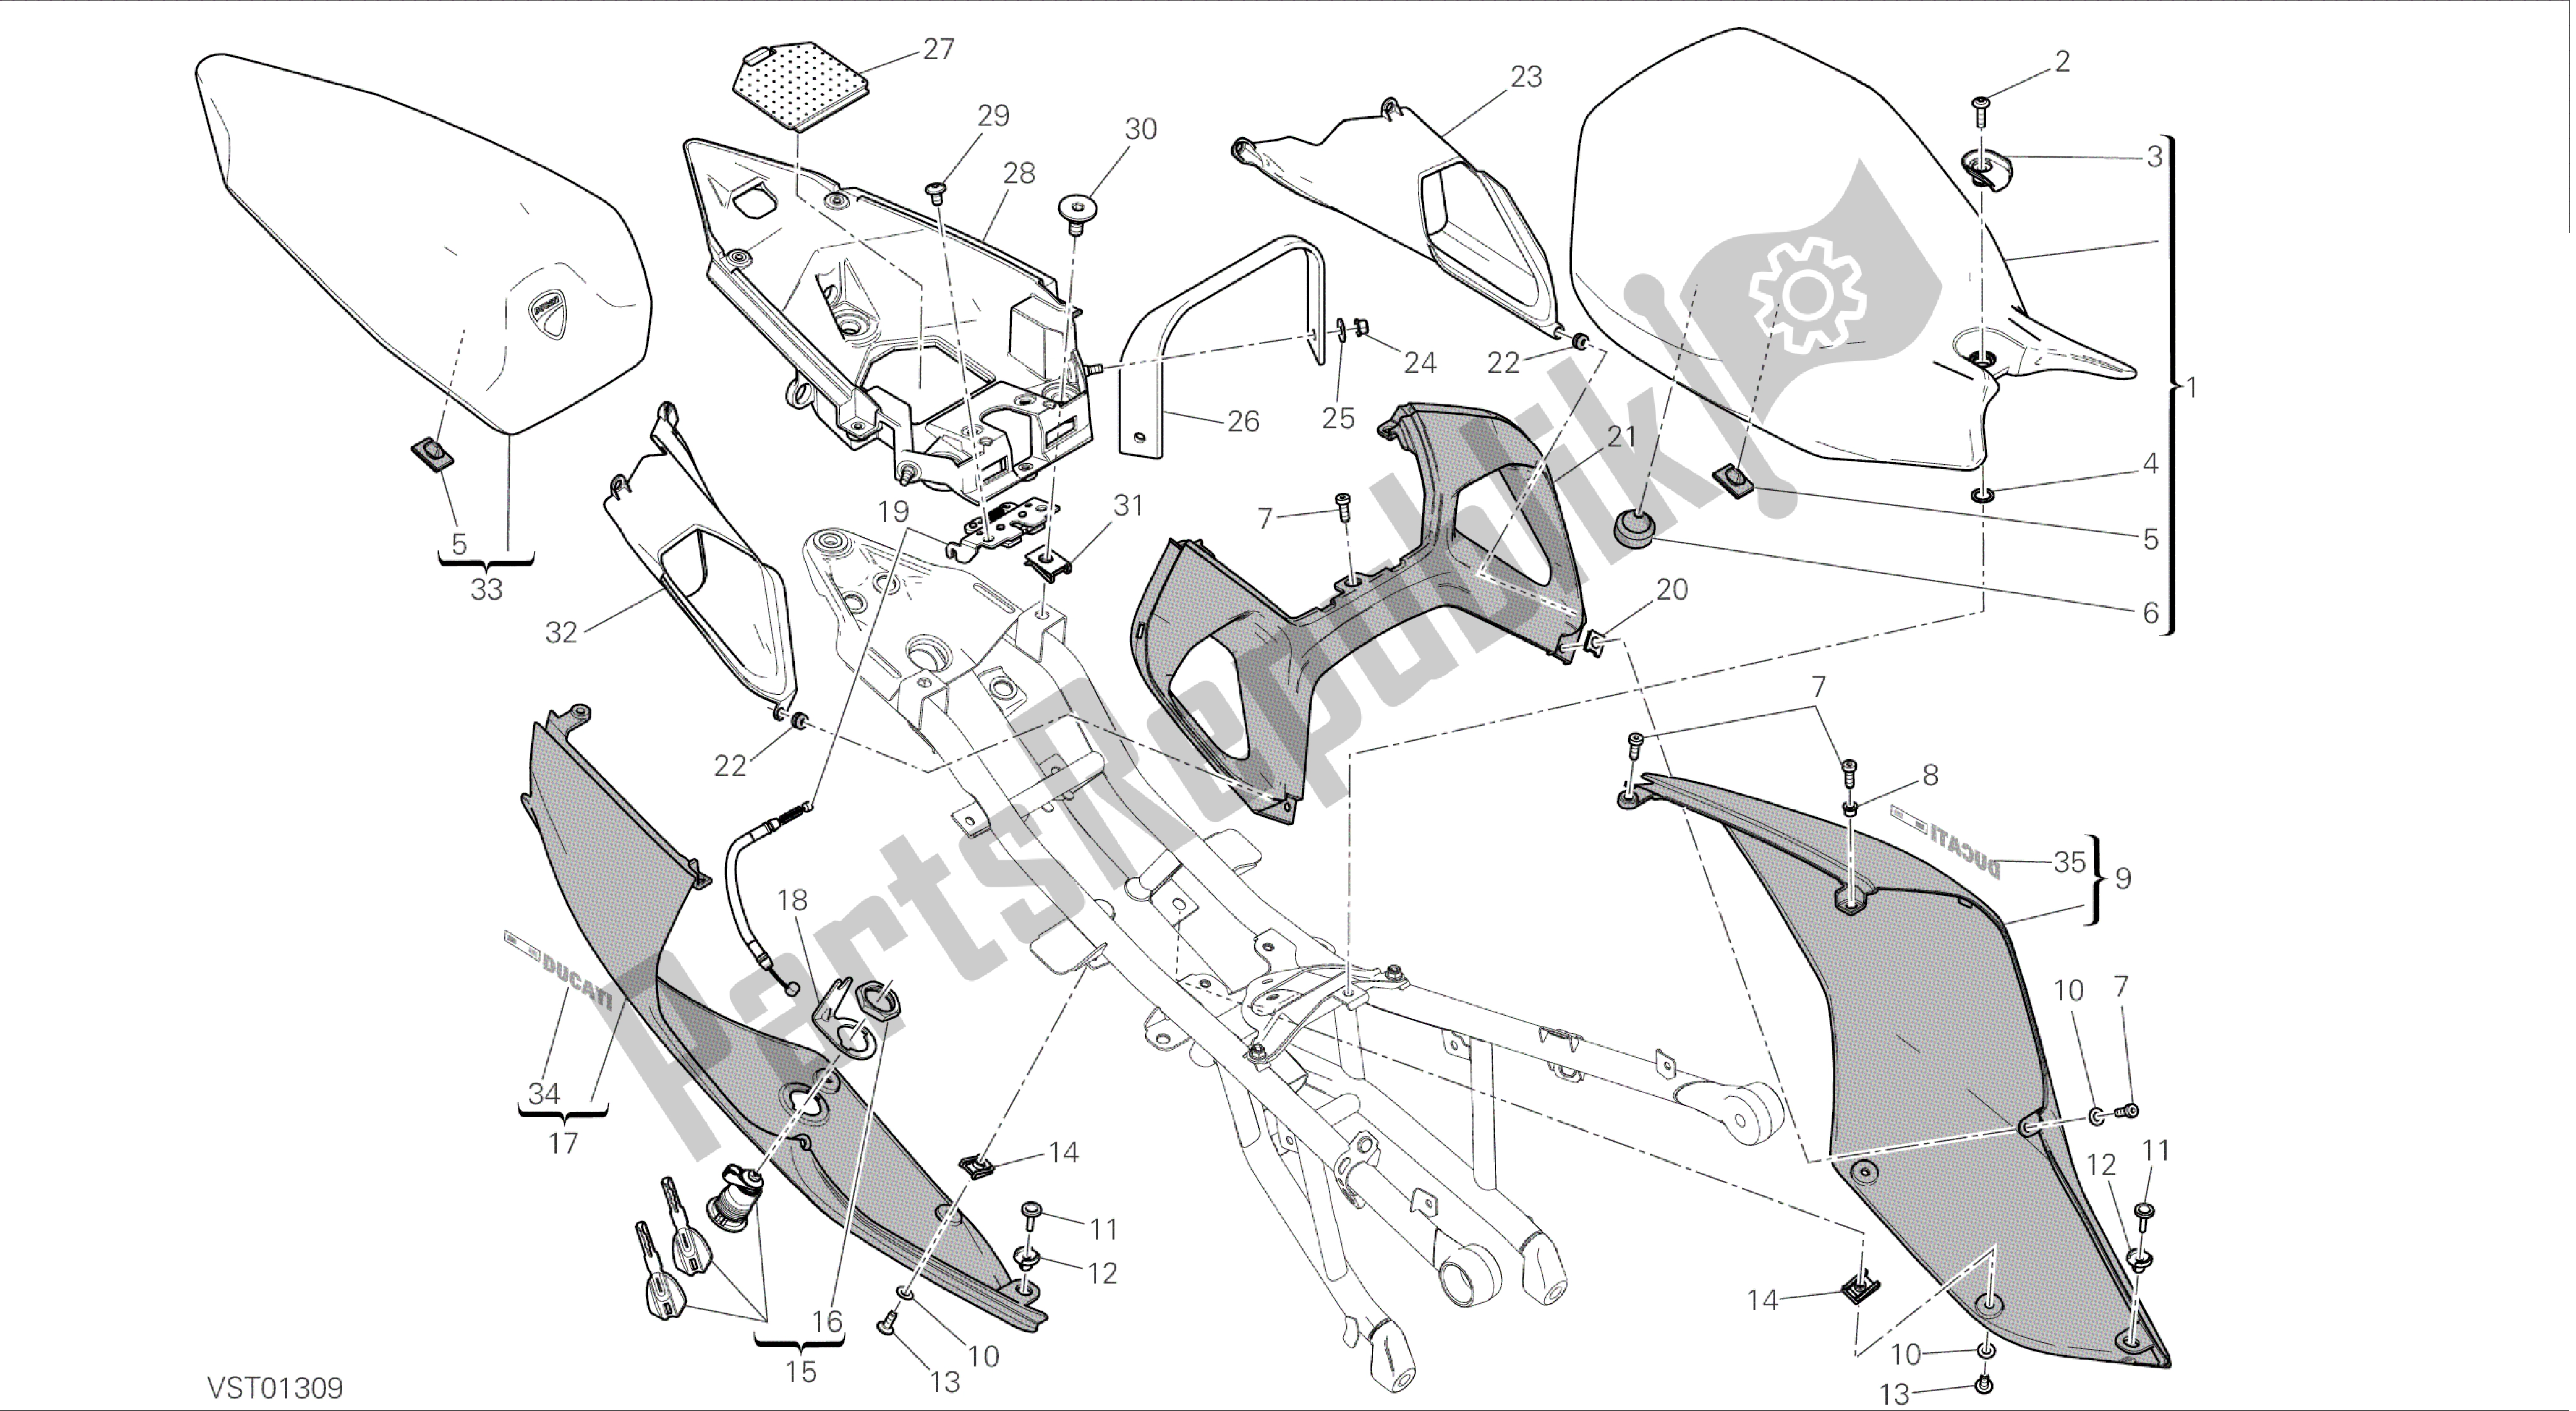 Todas las partes para Dibujo 033 - Asiento [mod: 899 Abs; Xst: Marco De Grupo Aus, Eur, Fra, Jap, Twn] de Ducati Panigale 899 2014